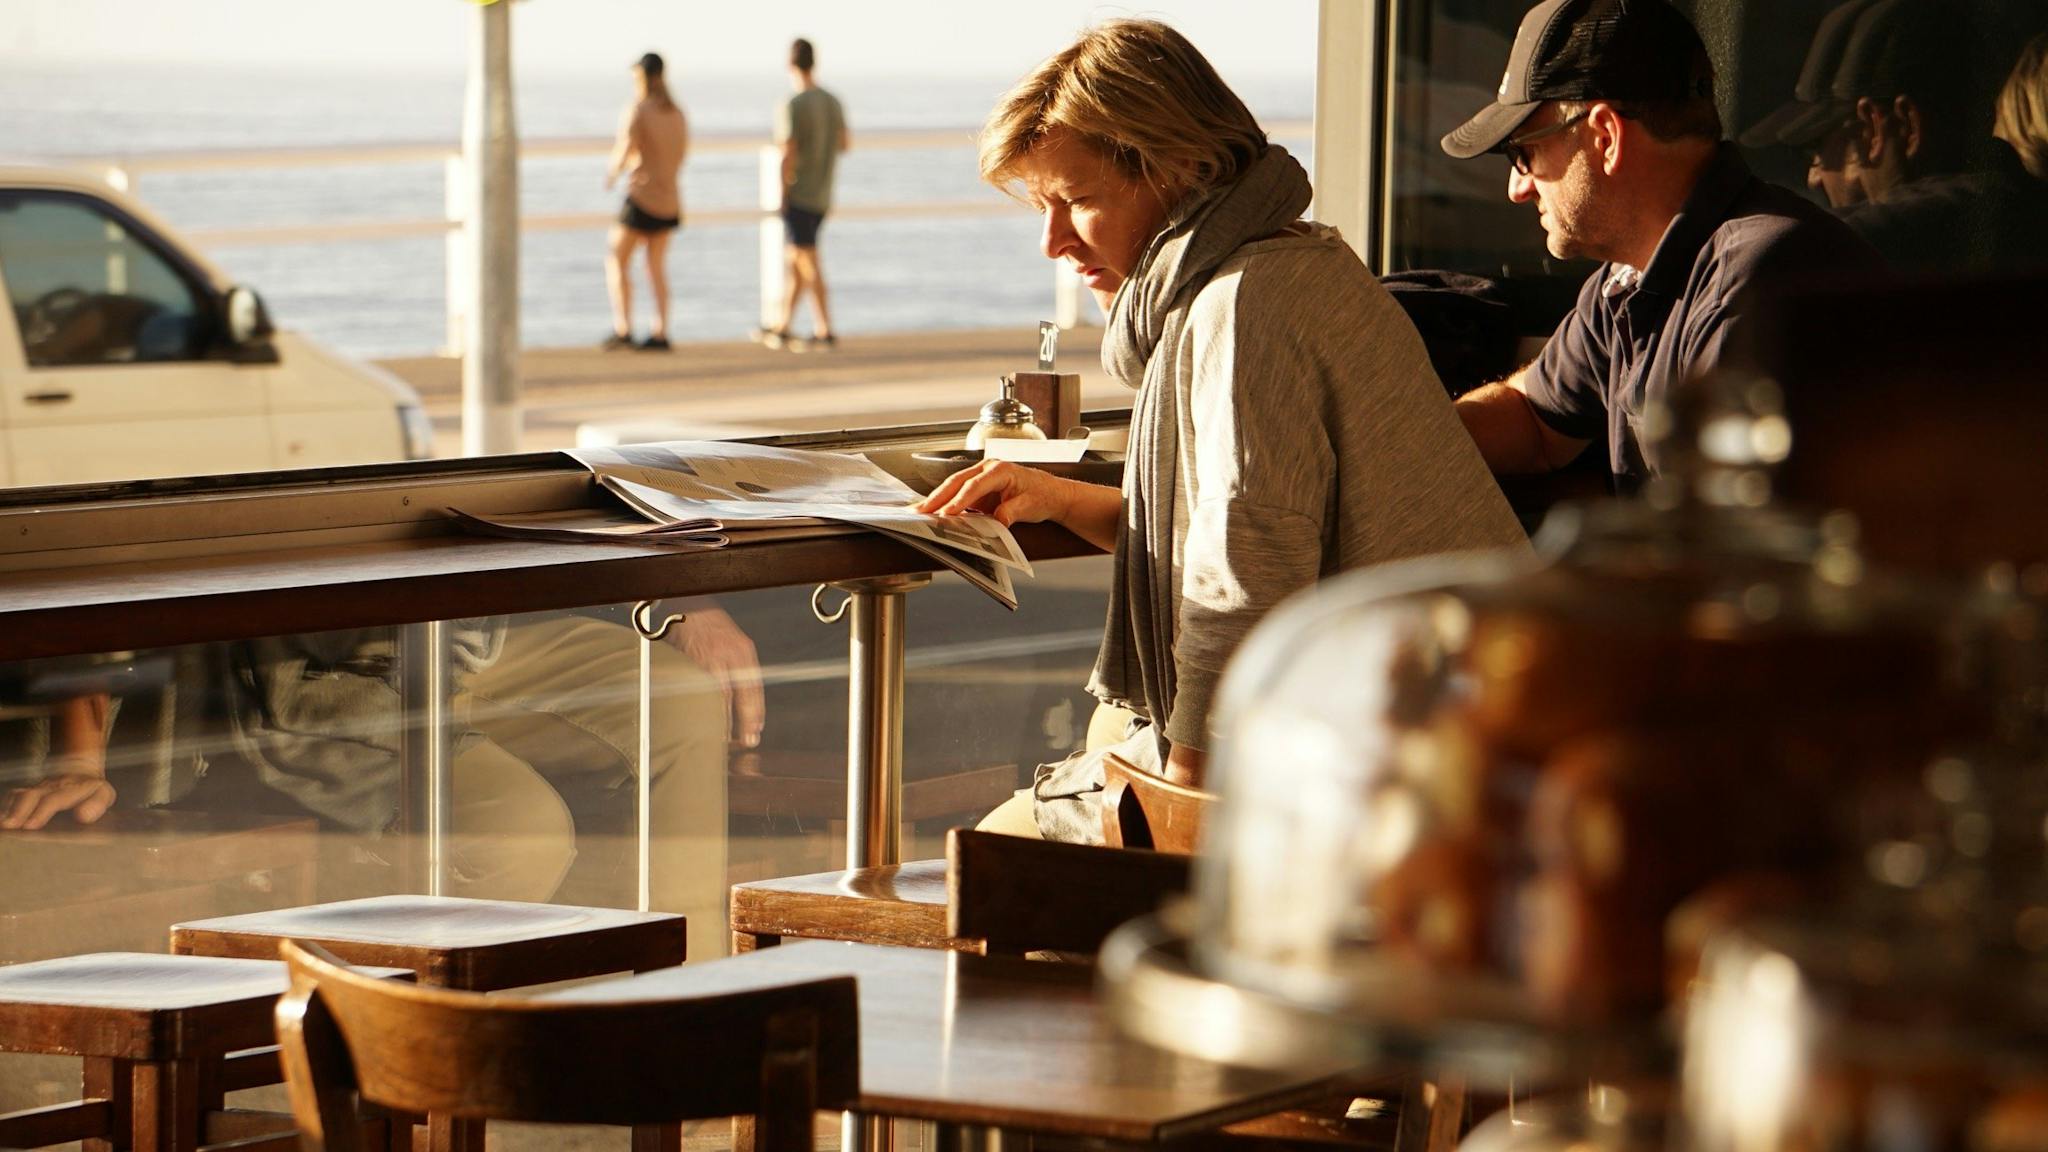 Ocean views, delicious coffee, welcoming staff, fresh and seasonal food.